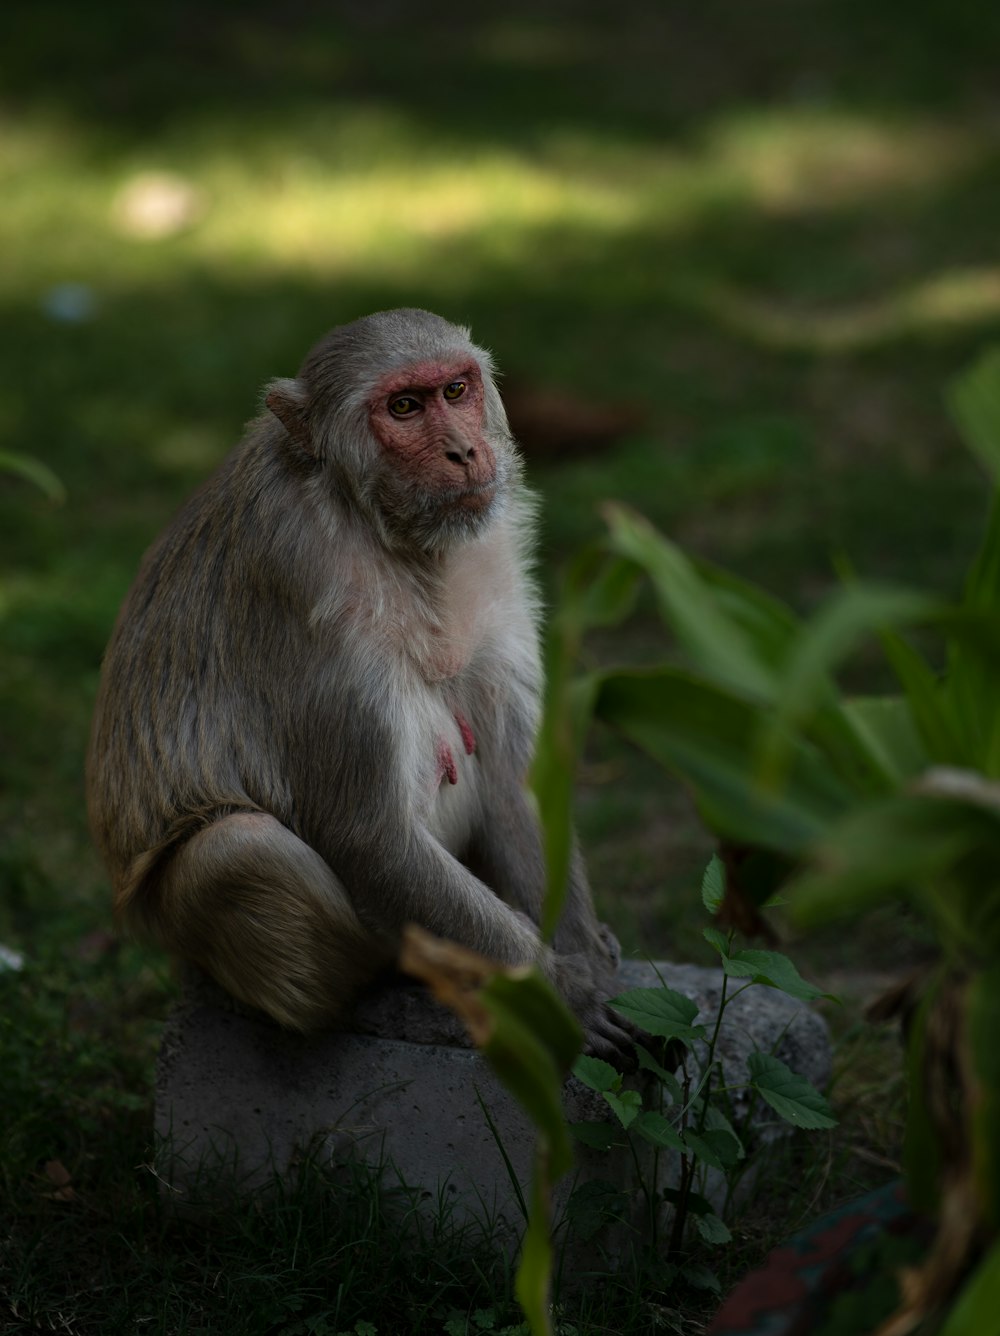 una scimmia seduta su una roccia nell'erba